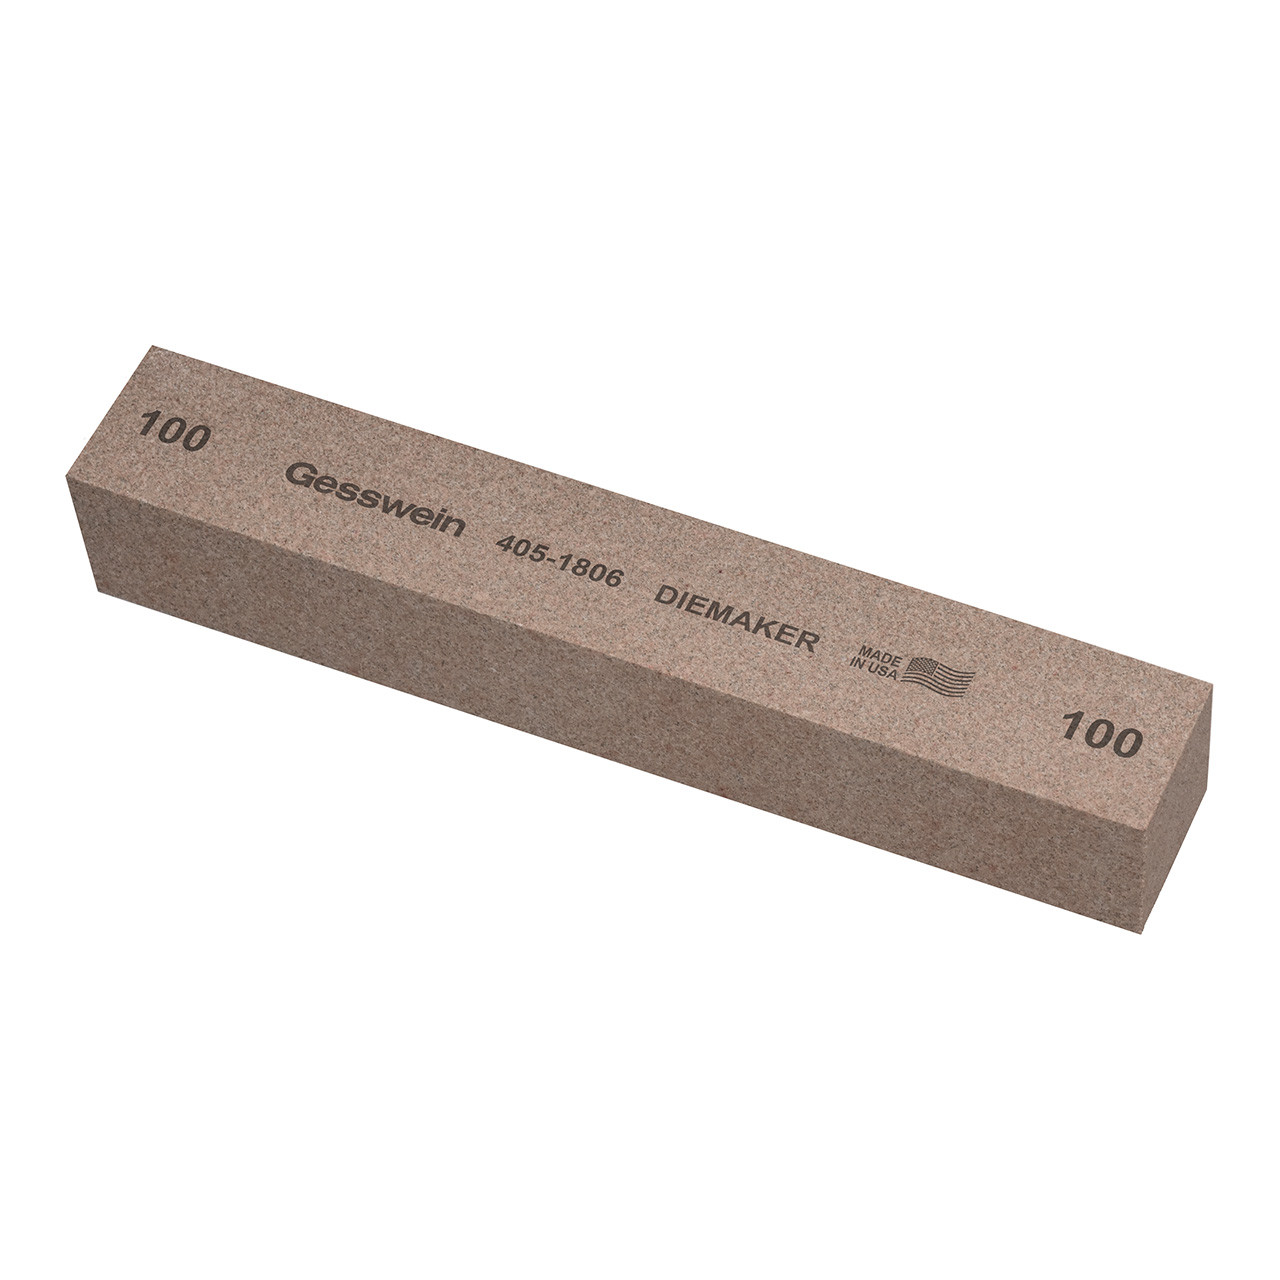 Gesswein® Diemaker Stones - 1" x 1" x 6", 100 Grit  (Pkg. of 6)